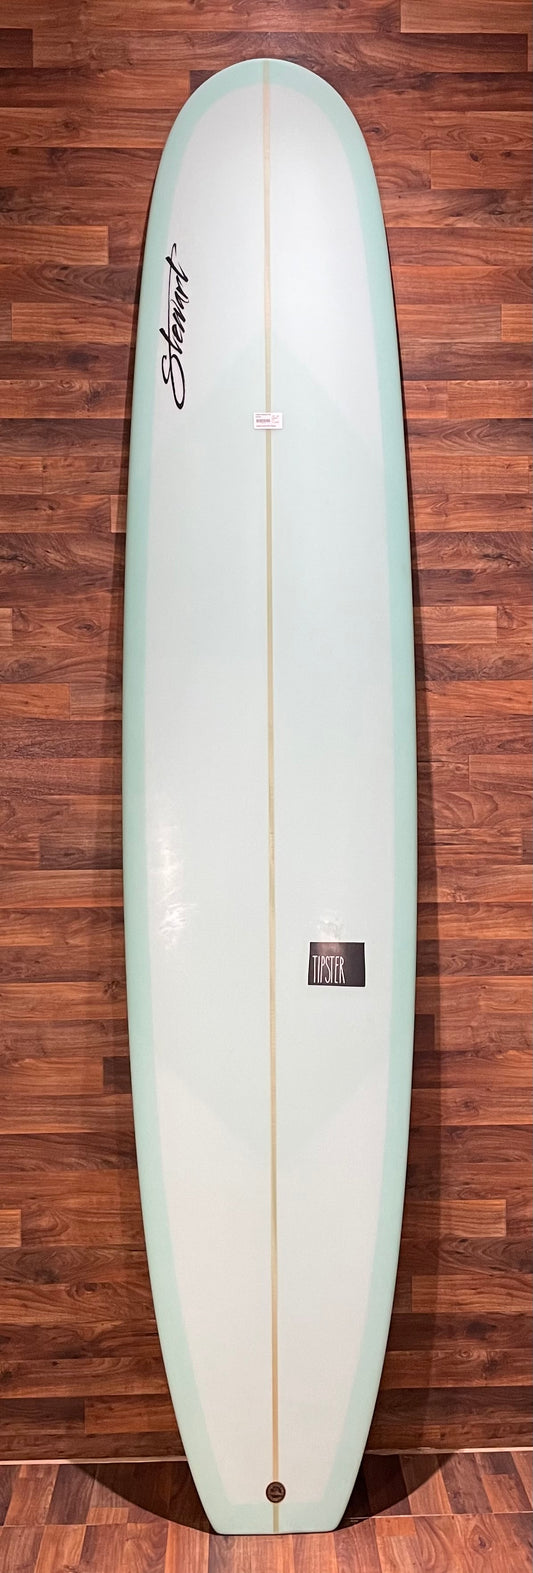 Stewart Tipster 9'4" Surfboard